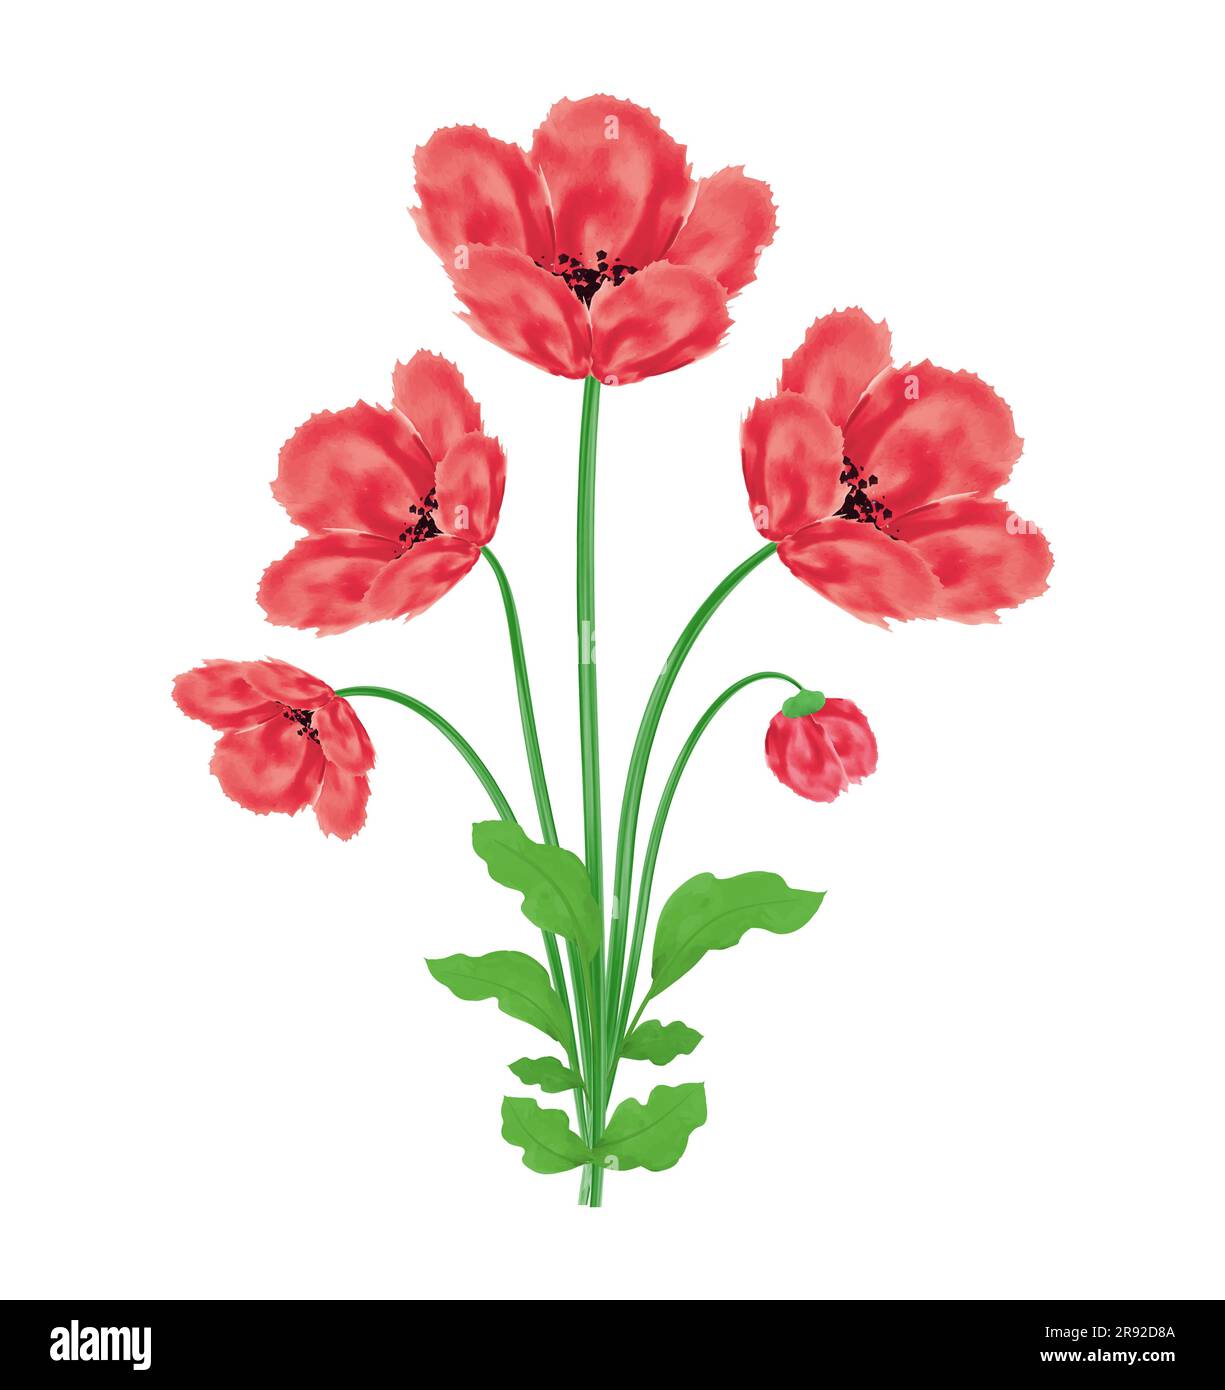 Fleurs de pavot bouquet d'aquarelle élément de design Illustration vectorielle pour le jour du souvenir, le jour d'Anzac isolé sur fond blanc Illustration de Vecteur